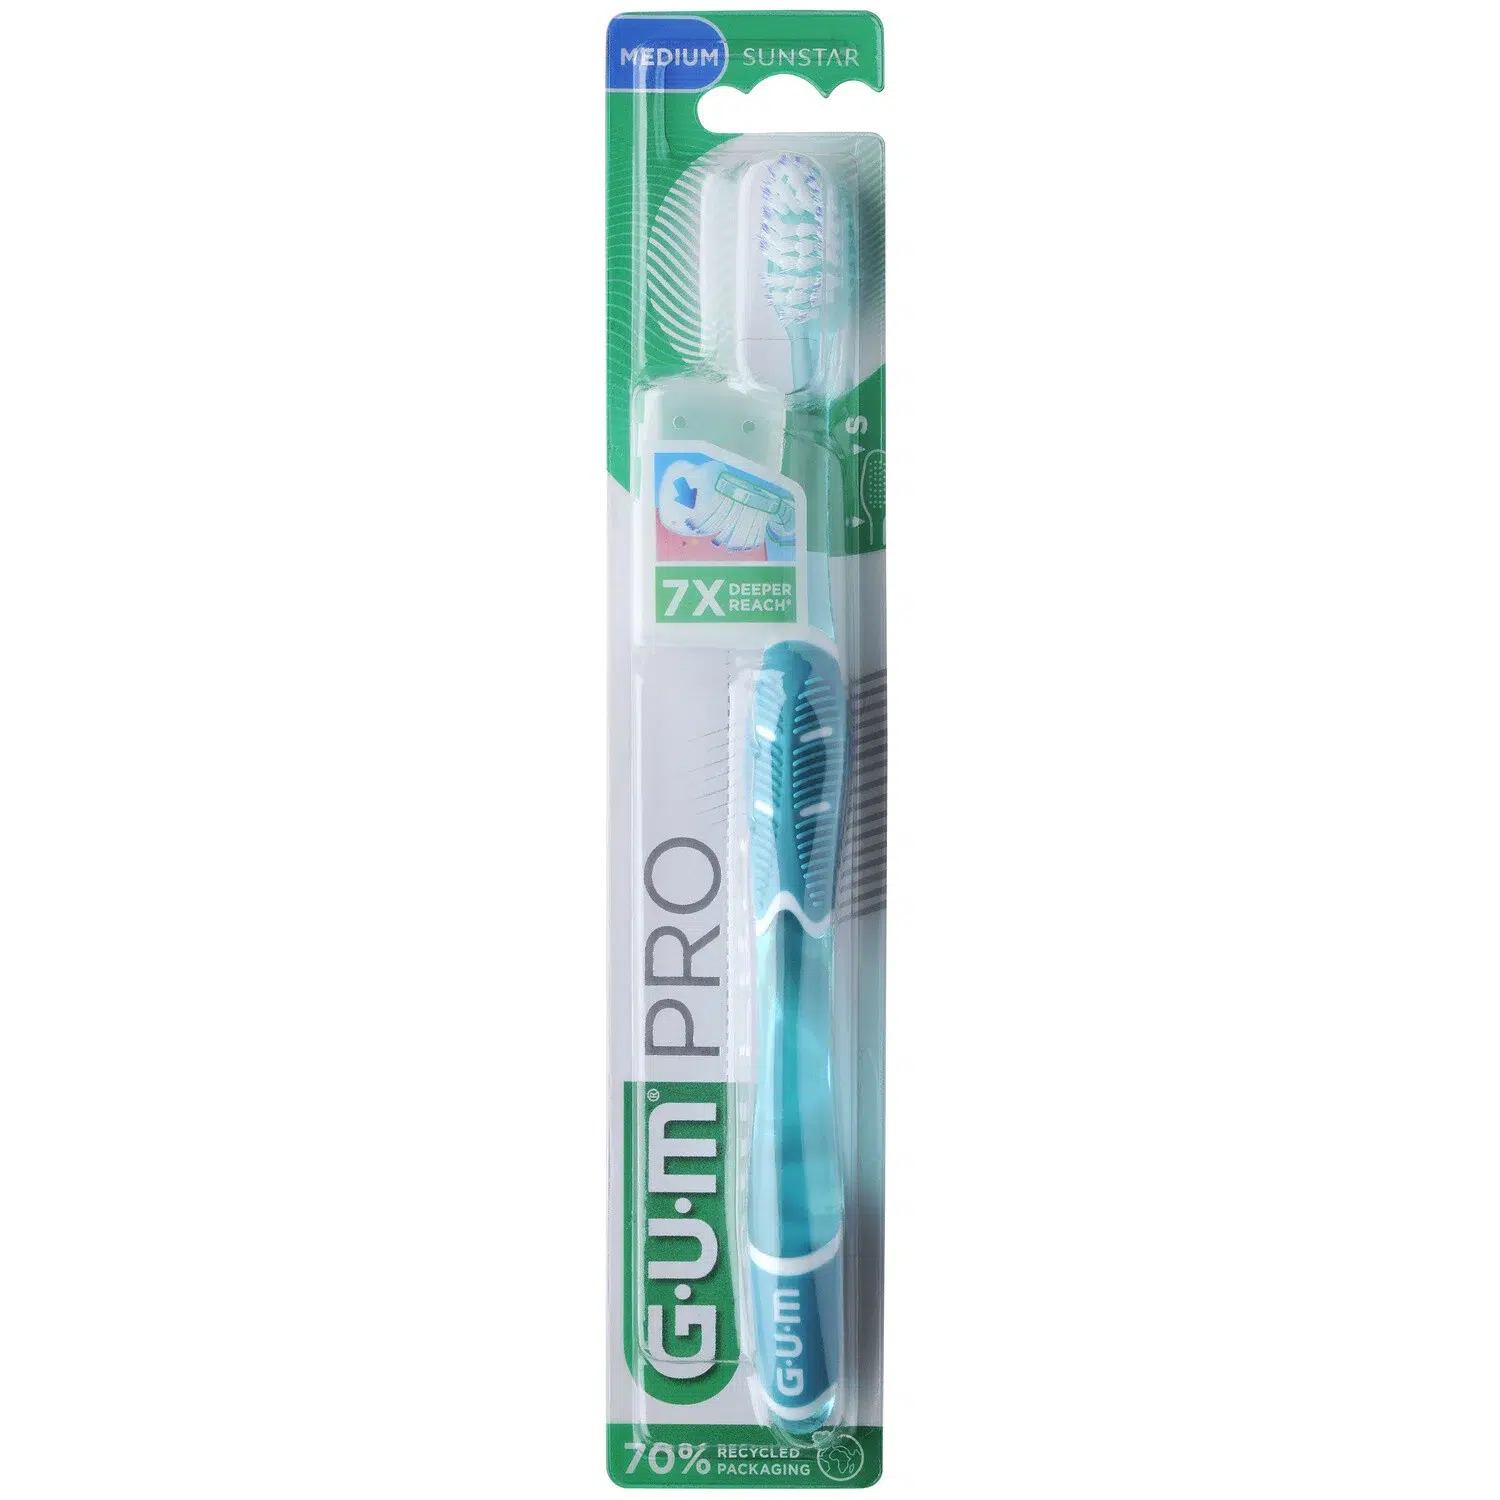 Brosse à dents gum medium SUNSTAR